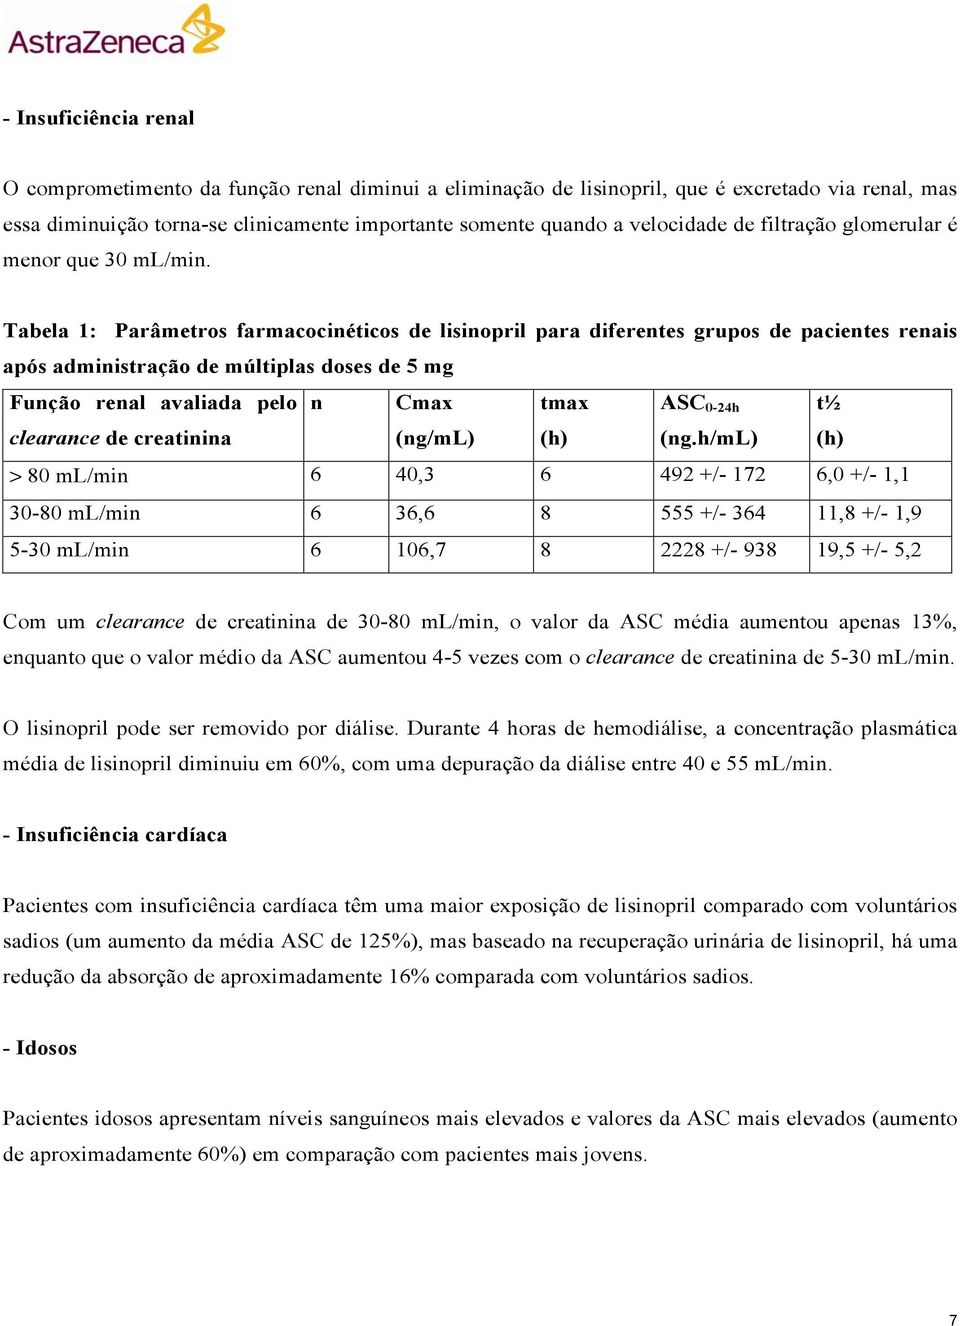 Tabela 1: Parâmetros farmacocinéticos de lisinopril para diferentes grupos de pacientes renais após administração de múltiplas doses de 5 mg Função renal avaliada pelo n Cmax tmax clearance de